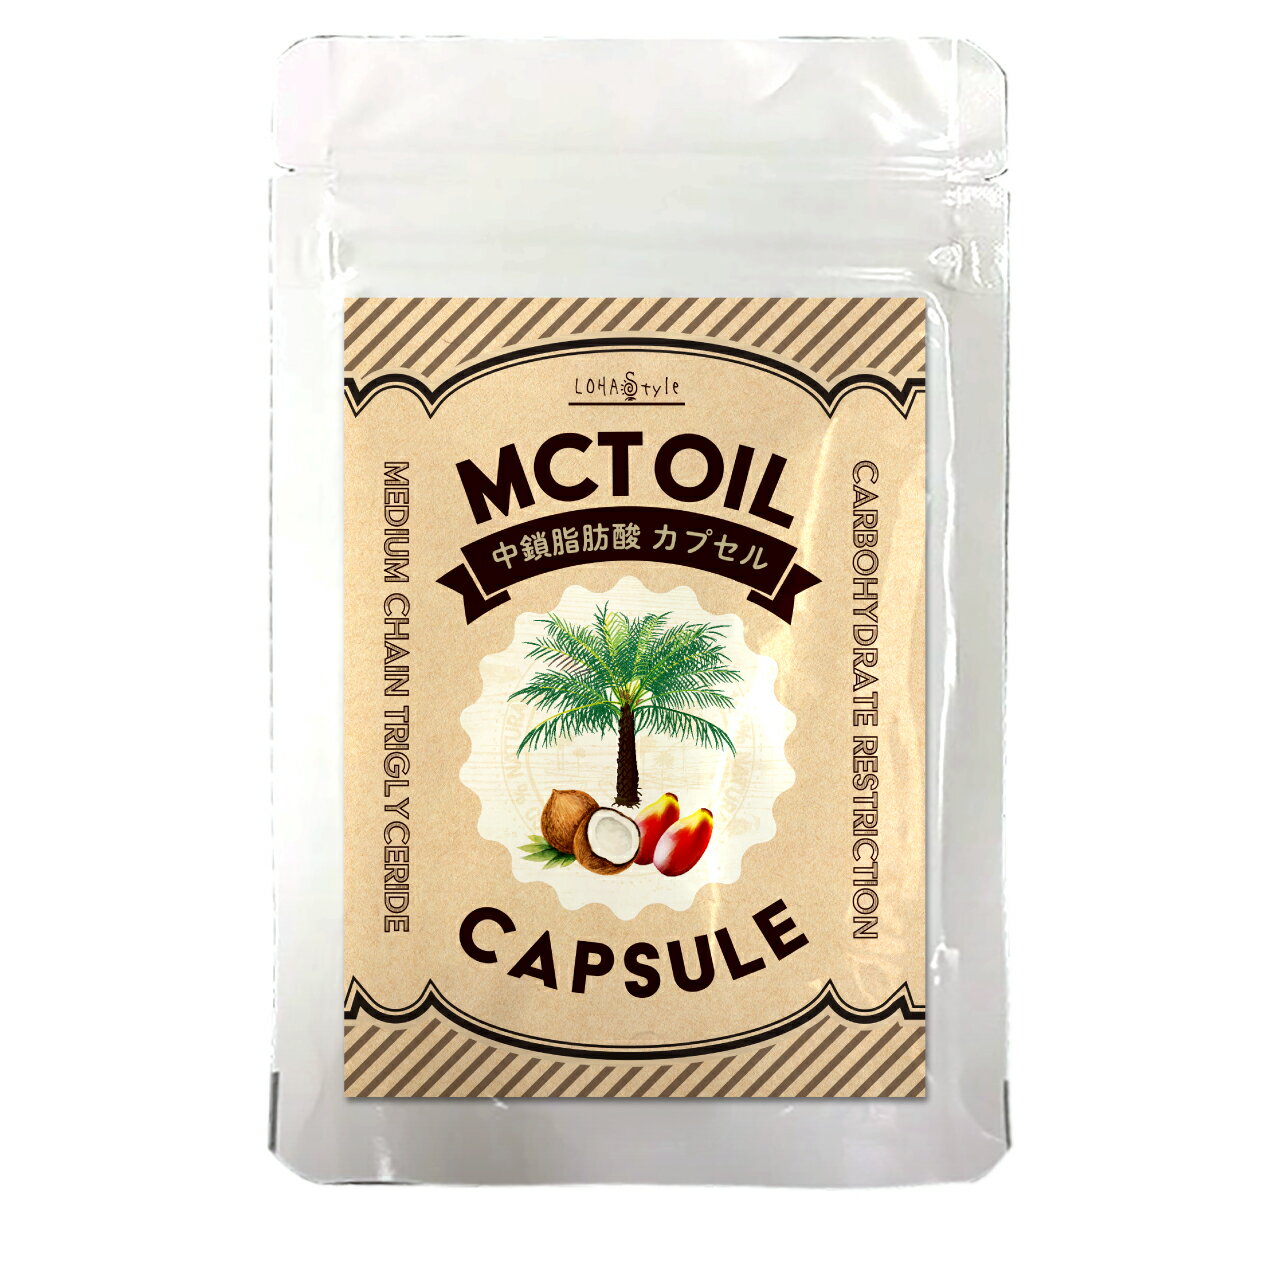 MCTオイル サプリメント 1袋 120粒 中鎖脂肪酸 持ち運び 外出時に便利 ケトン体 生成 糖質制限 ダイエット サポートに サプリメント 専門店MHS